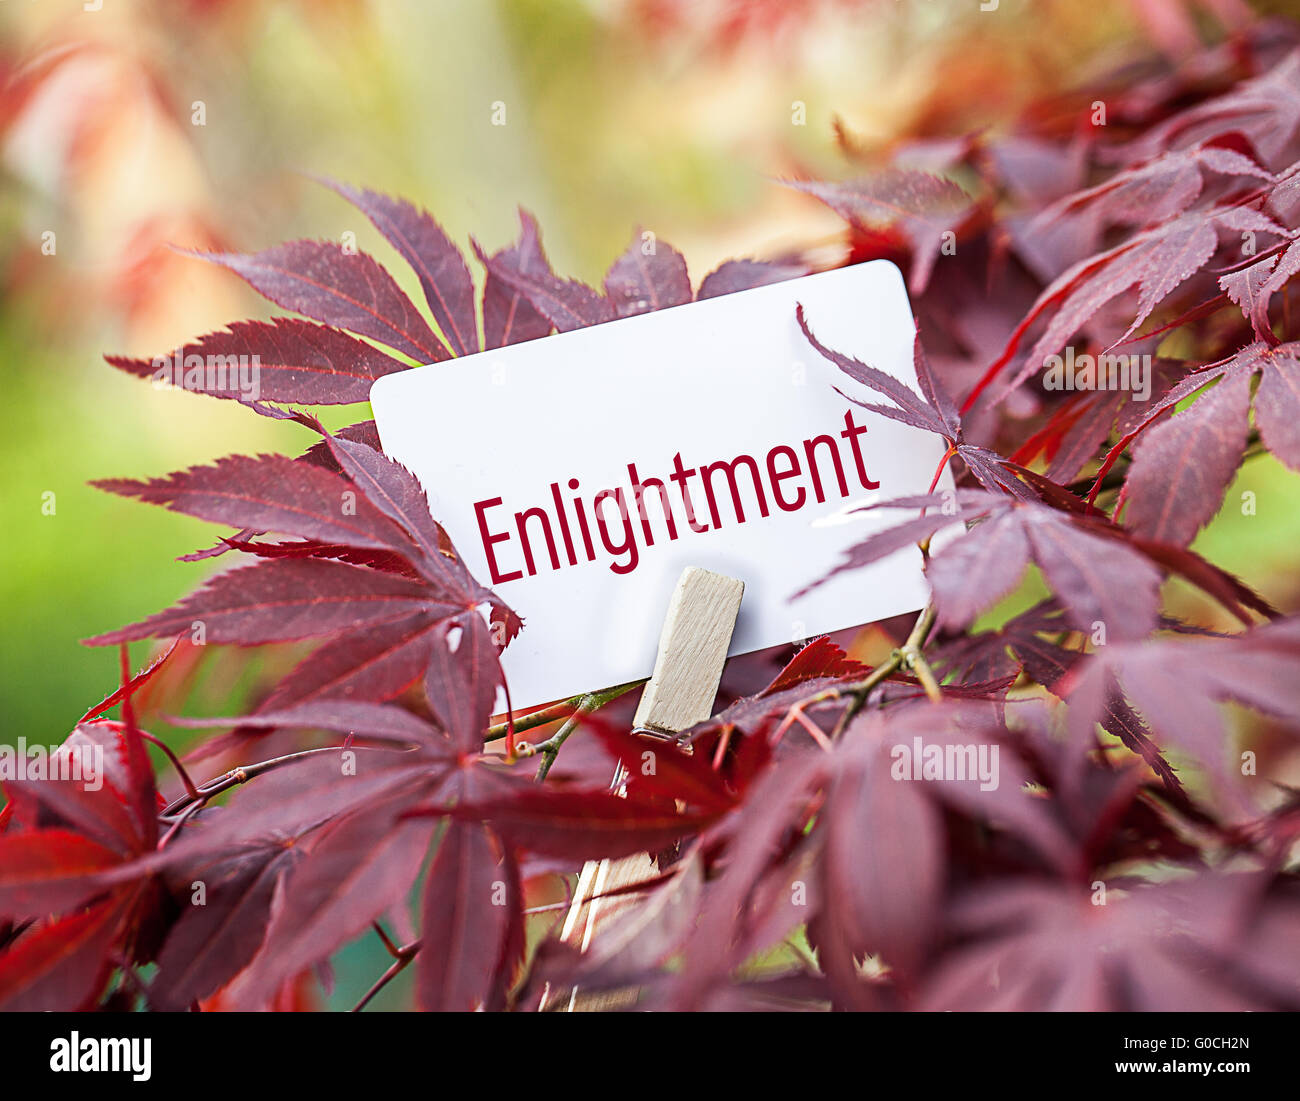 The Word “Enlightenment” in a fan-maple tree Stock Photo